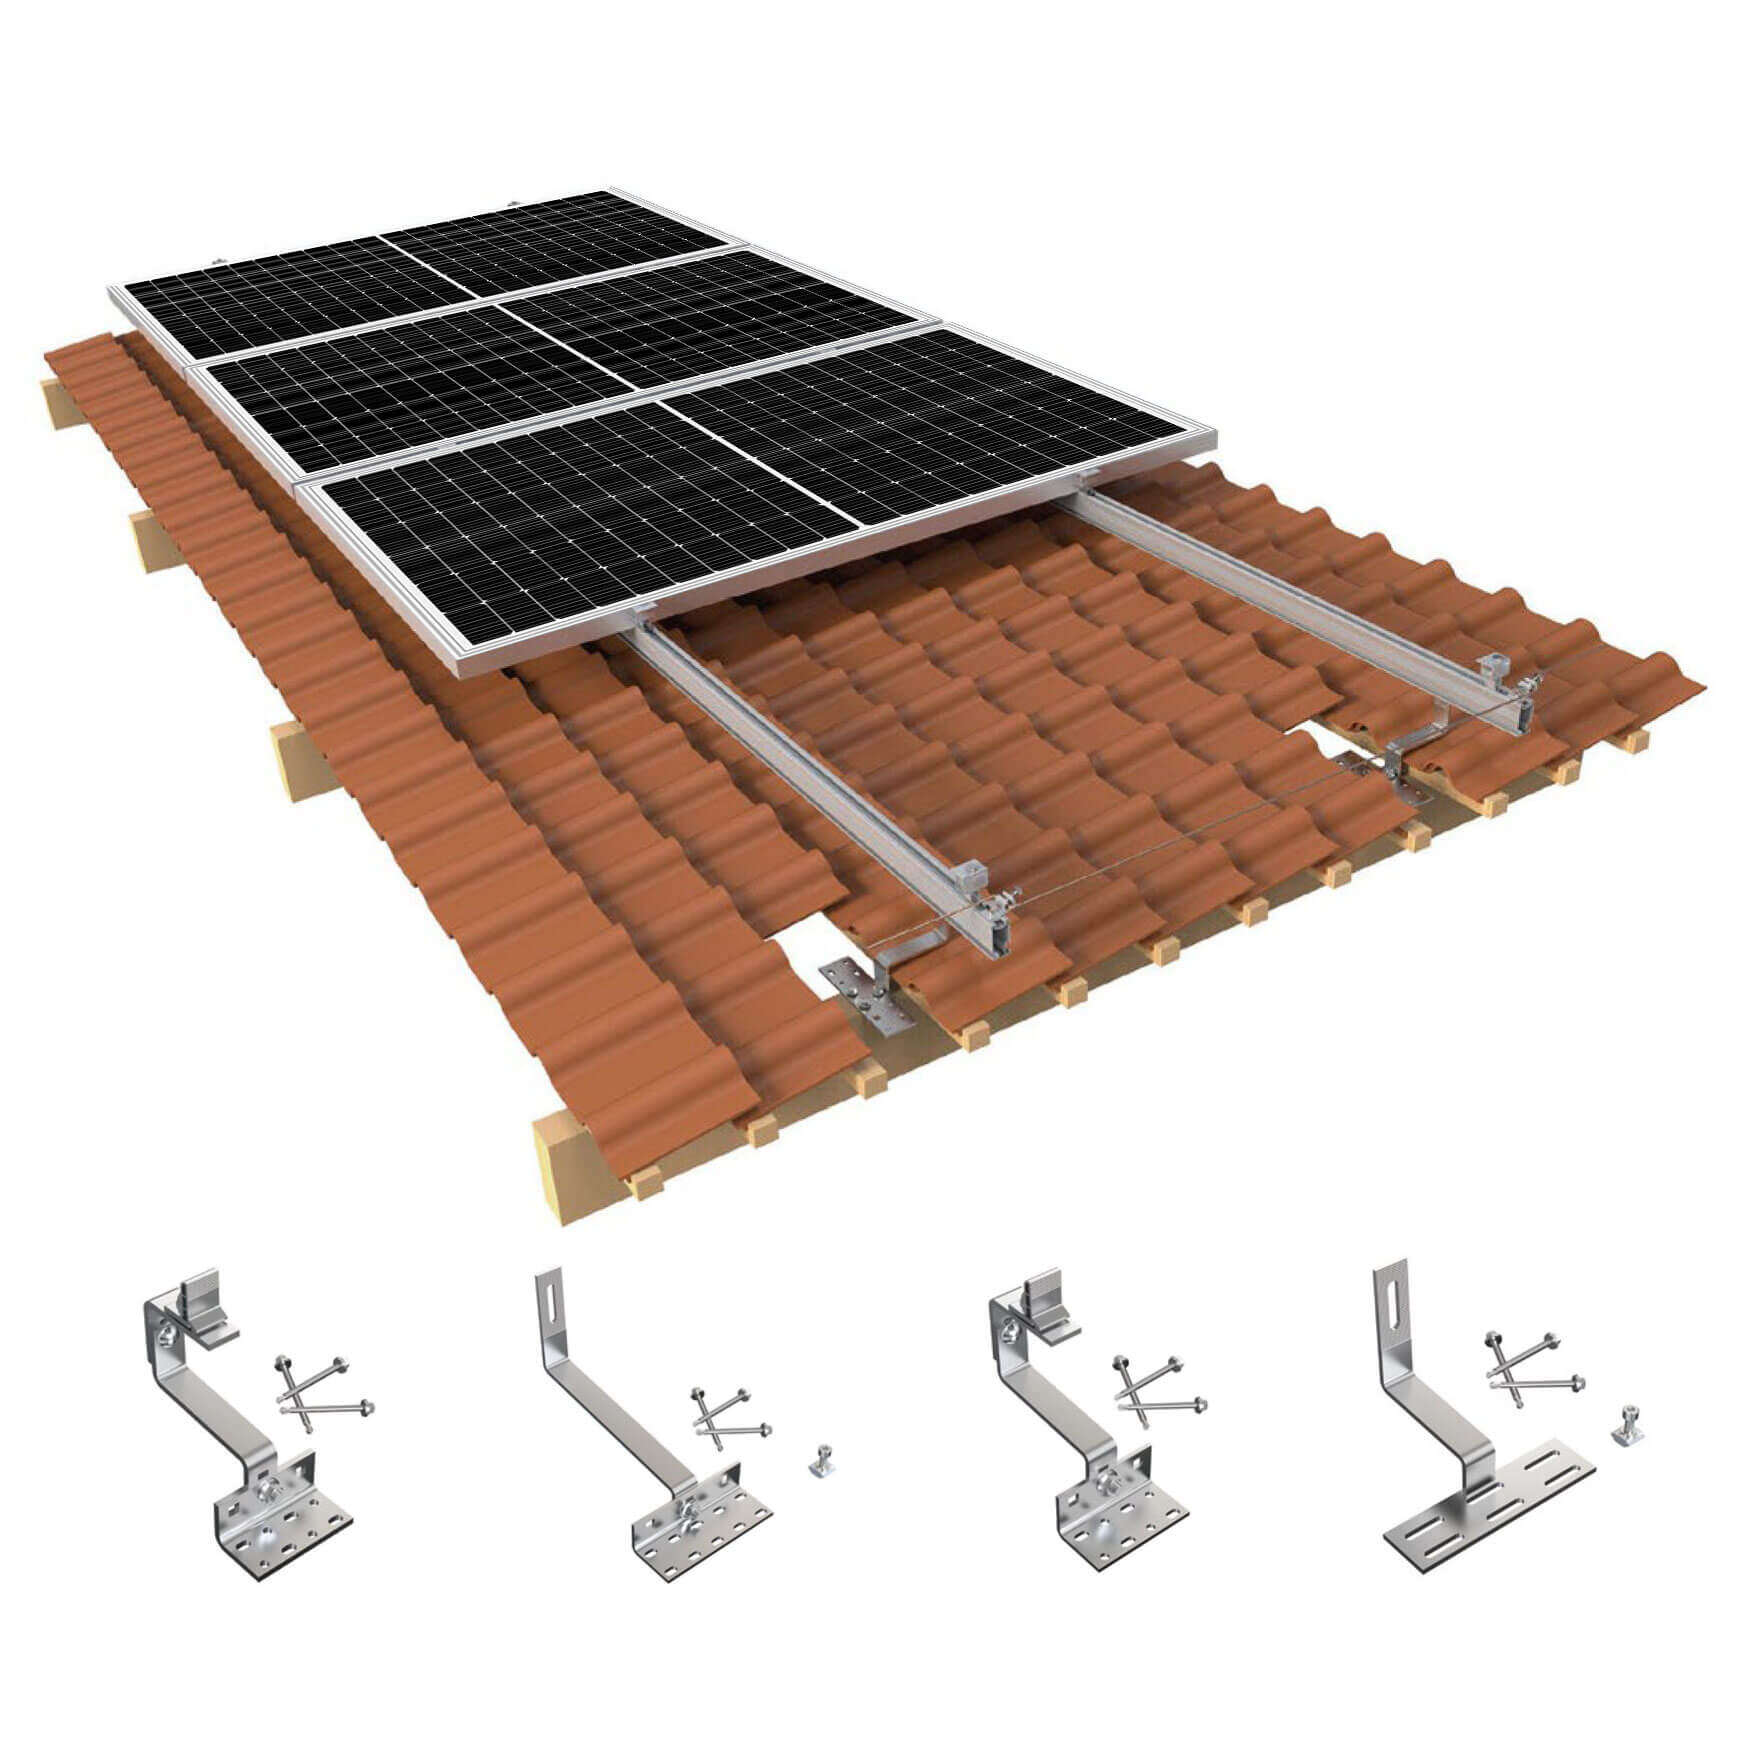 hybrid solar system for home